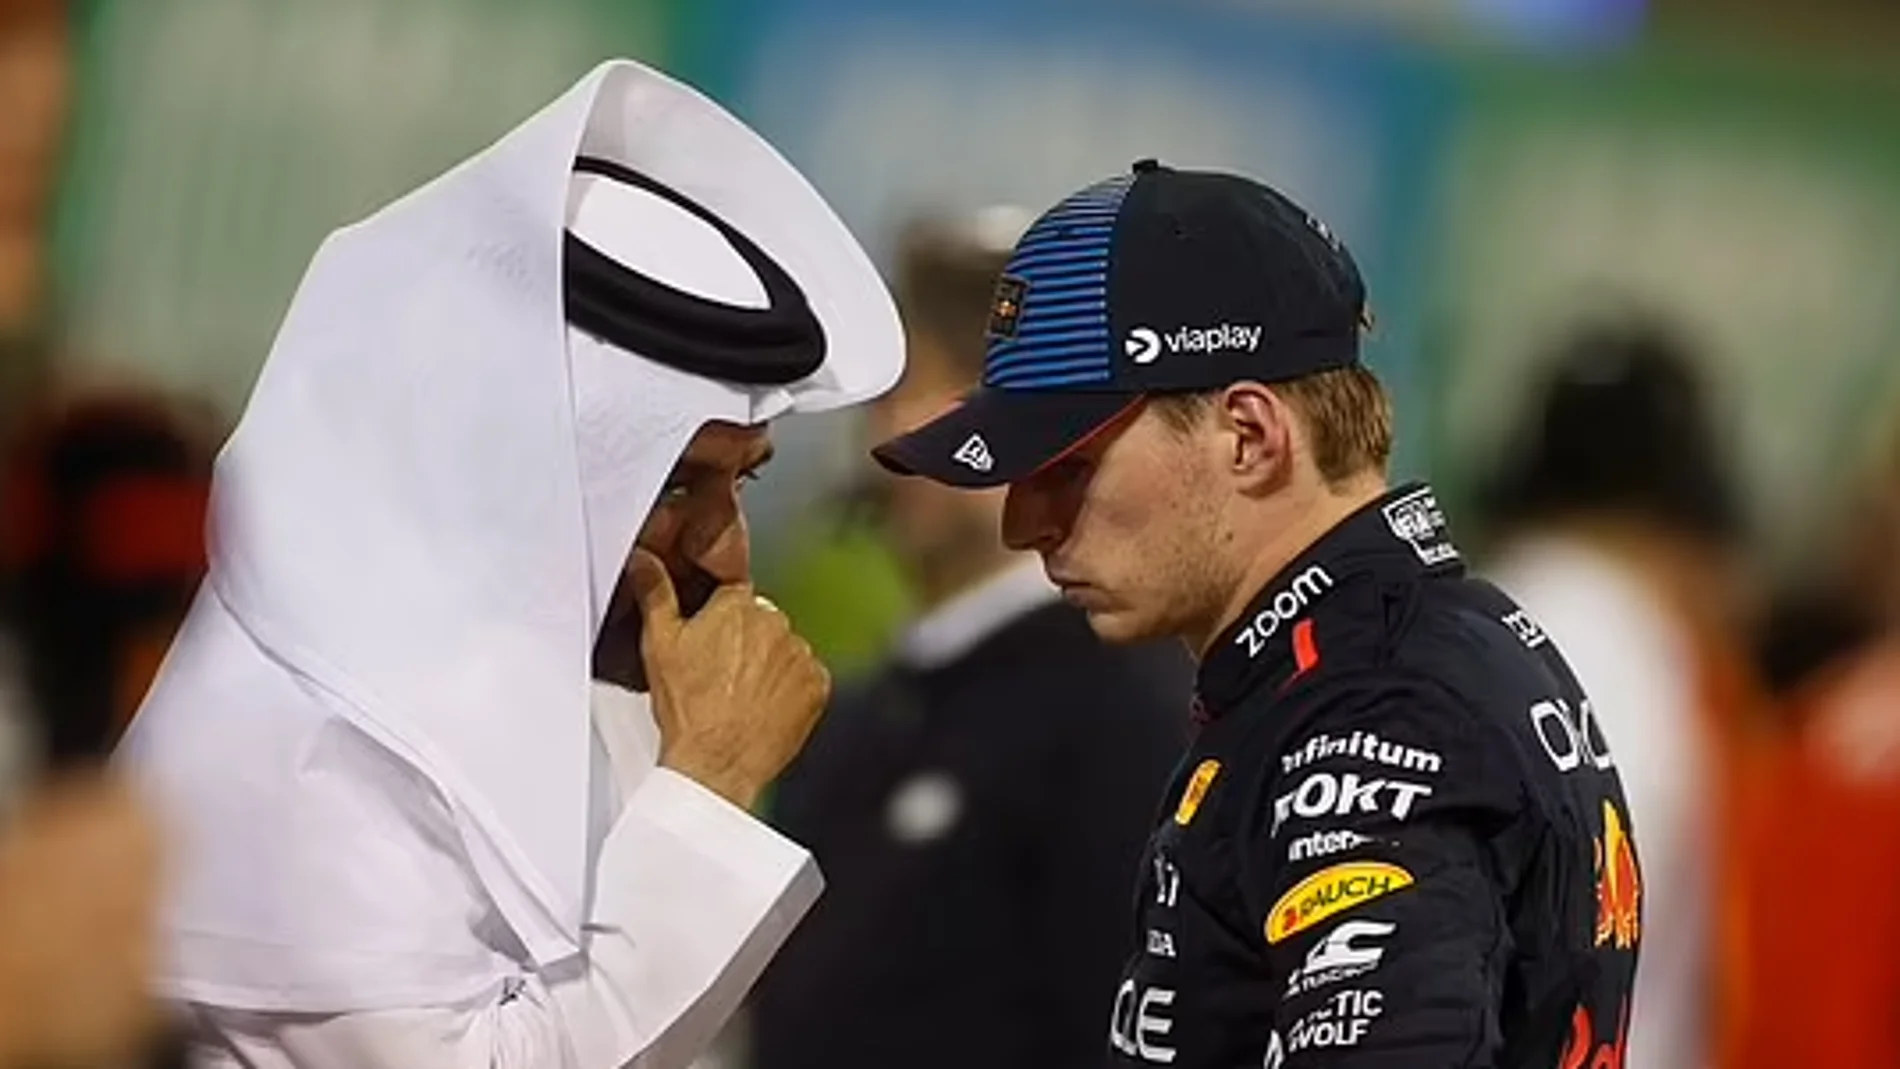 La súplica desesperada del prsidente de la FIA a Max Verstappen: "Debes hacerlo..."